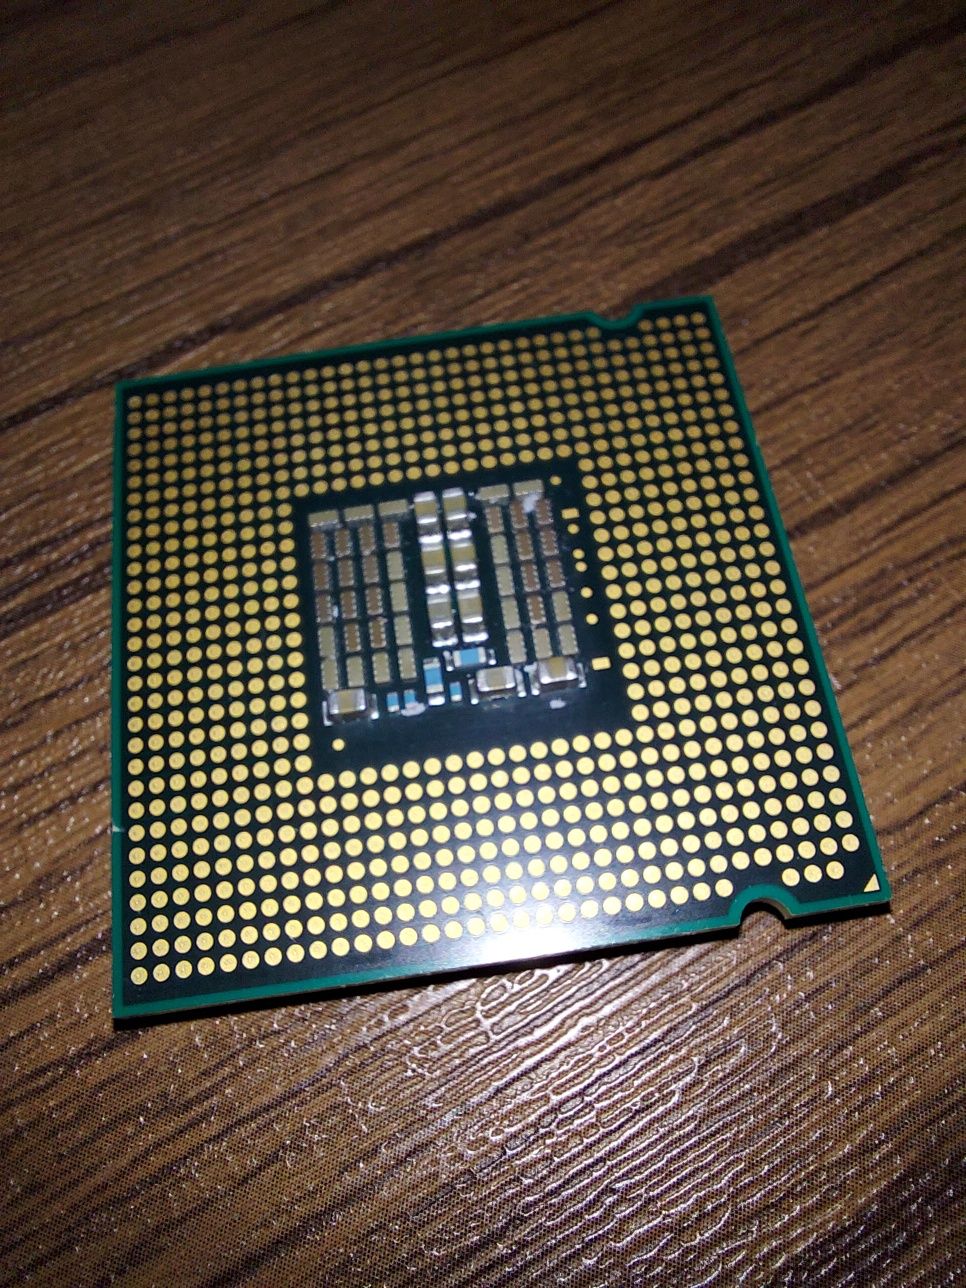 Intel Q9550 core 2 quad cpu